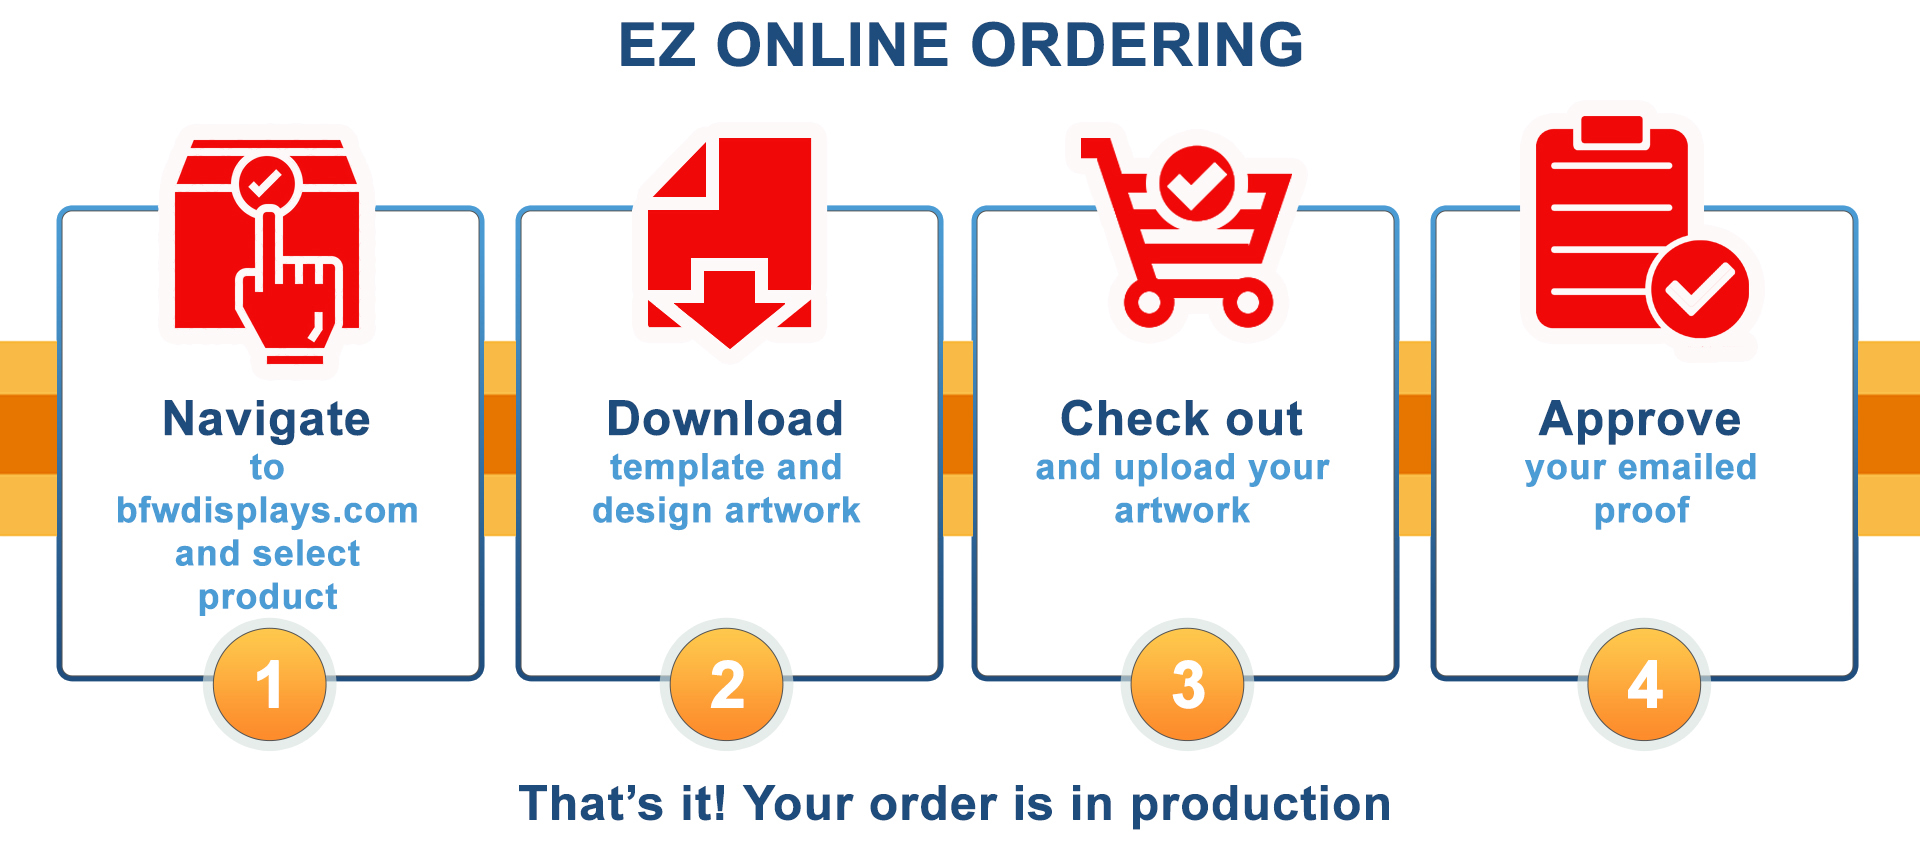 EZ Online Ordering